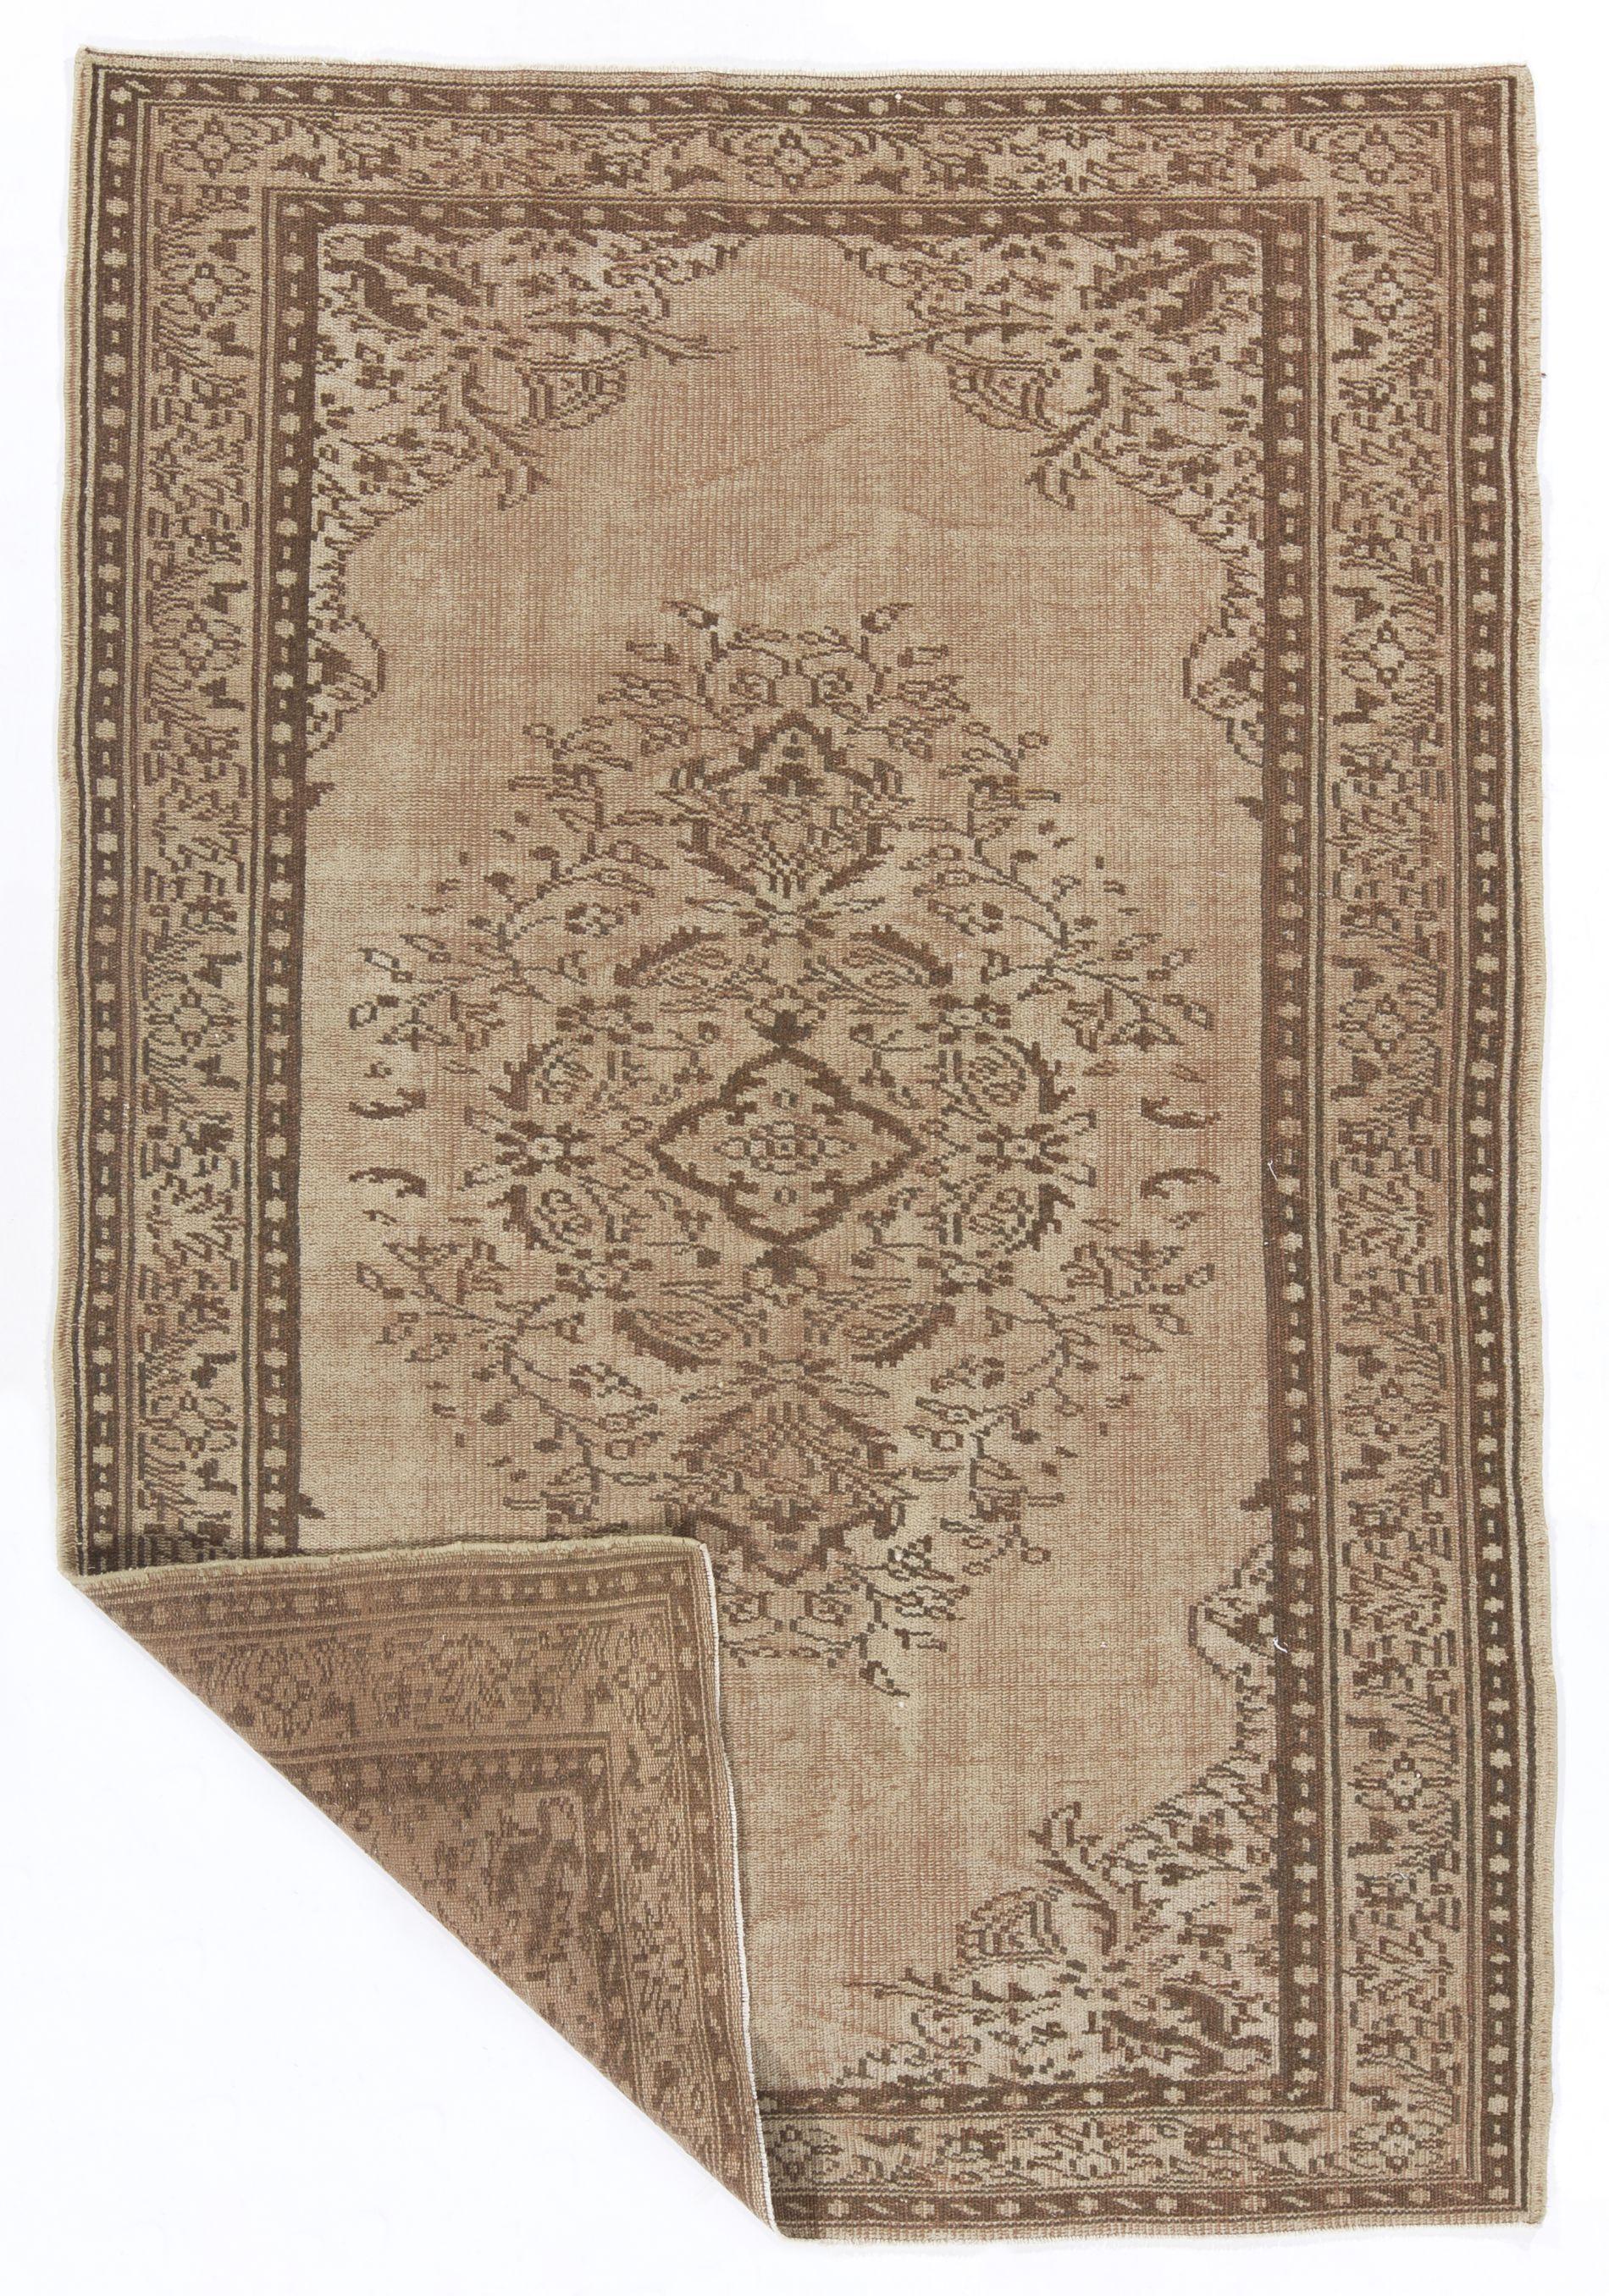 Ein türkischer Vintage-Teppich. Fein handgeknüpft mit gleichmäßigem, mittelhohem Wollflor auf Baumwollgrund. Sehr guter Zustand. Robust und so sauber wie ein nagelneuer Teppich (professionell tiefgewaschen). 
Größe: 5,4 x 7,8 ft.